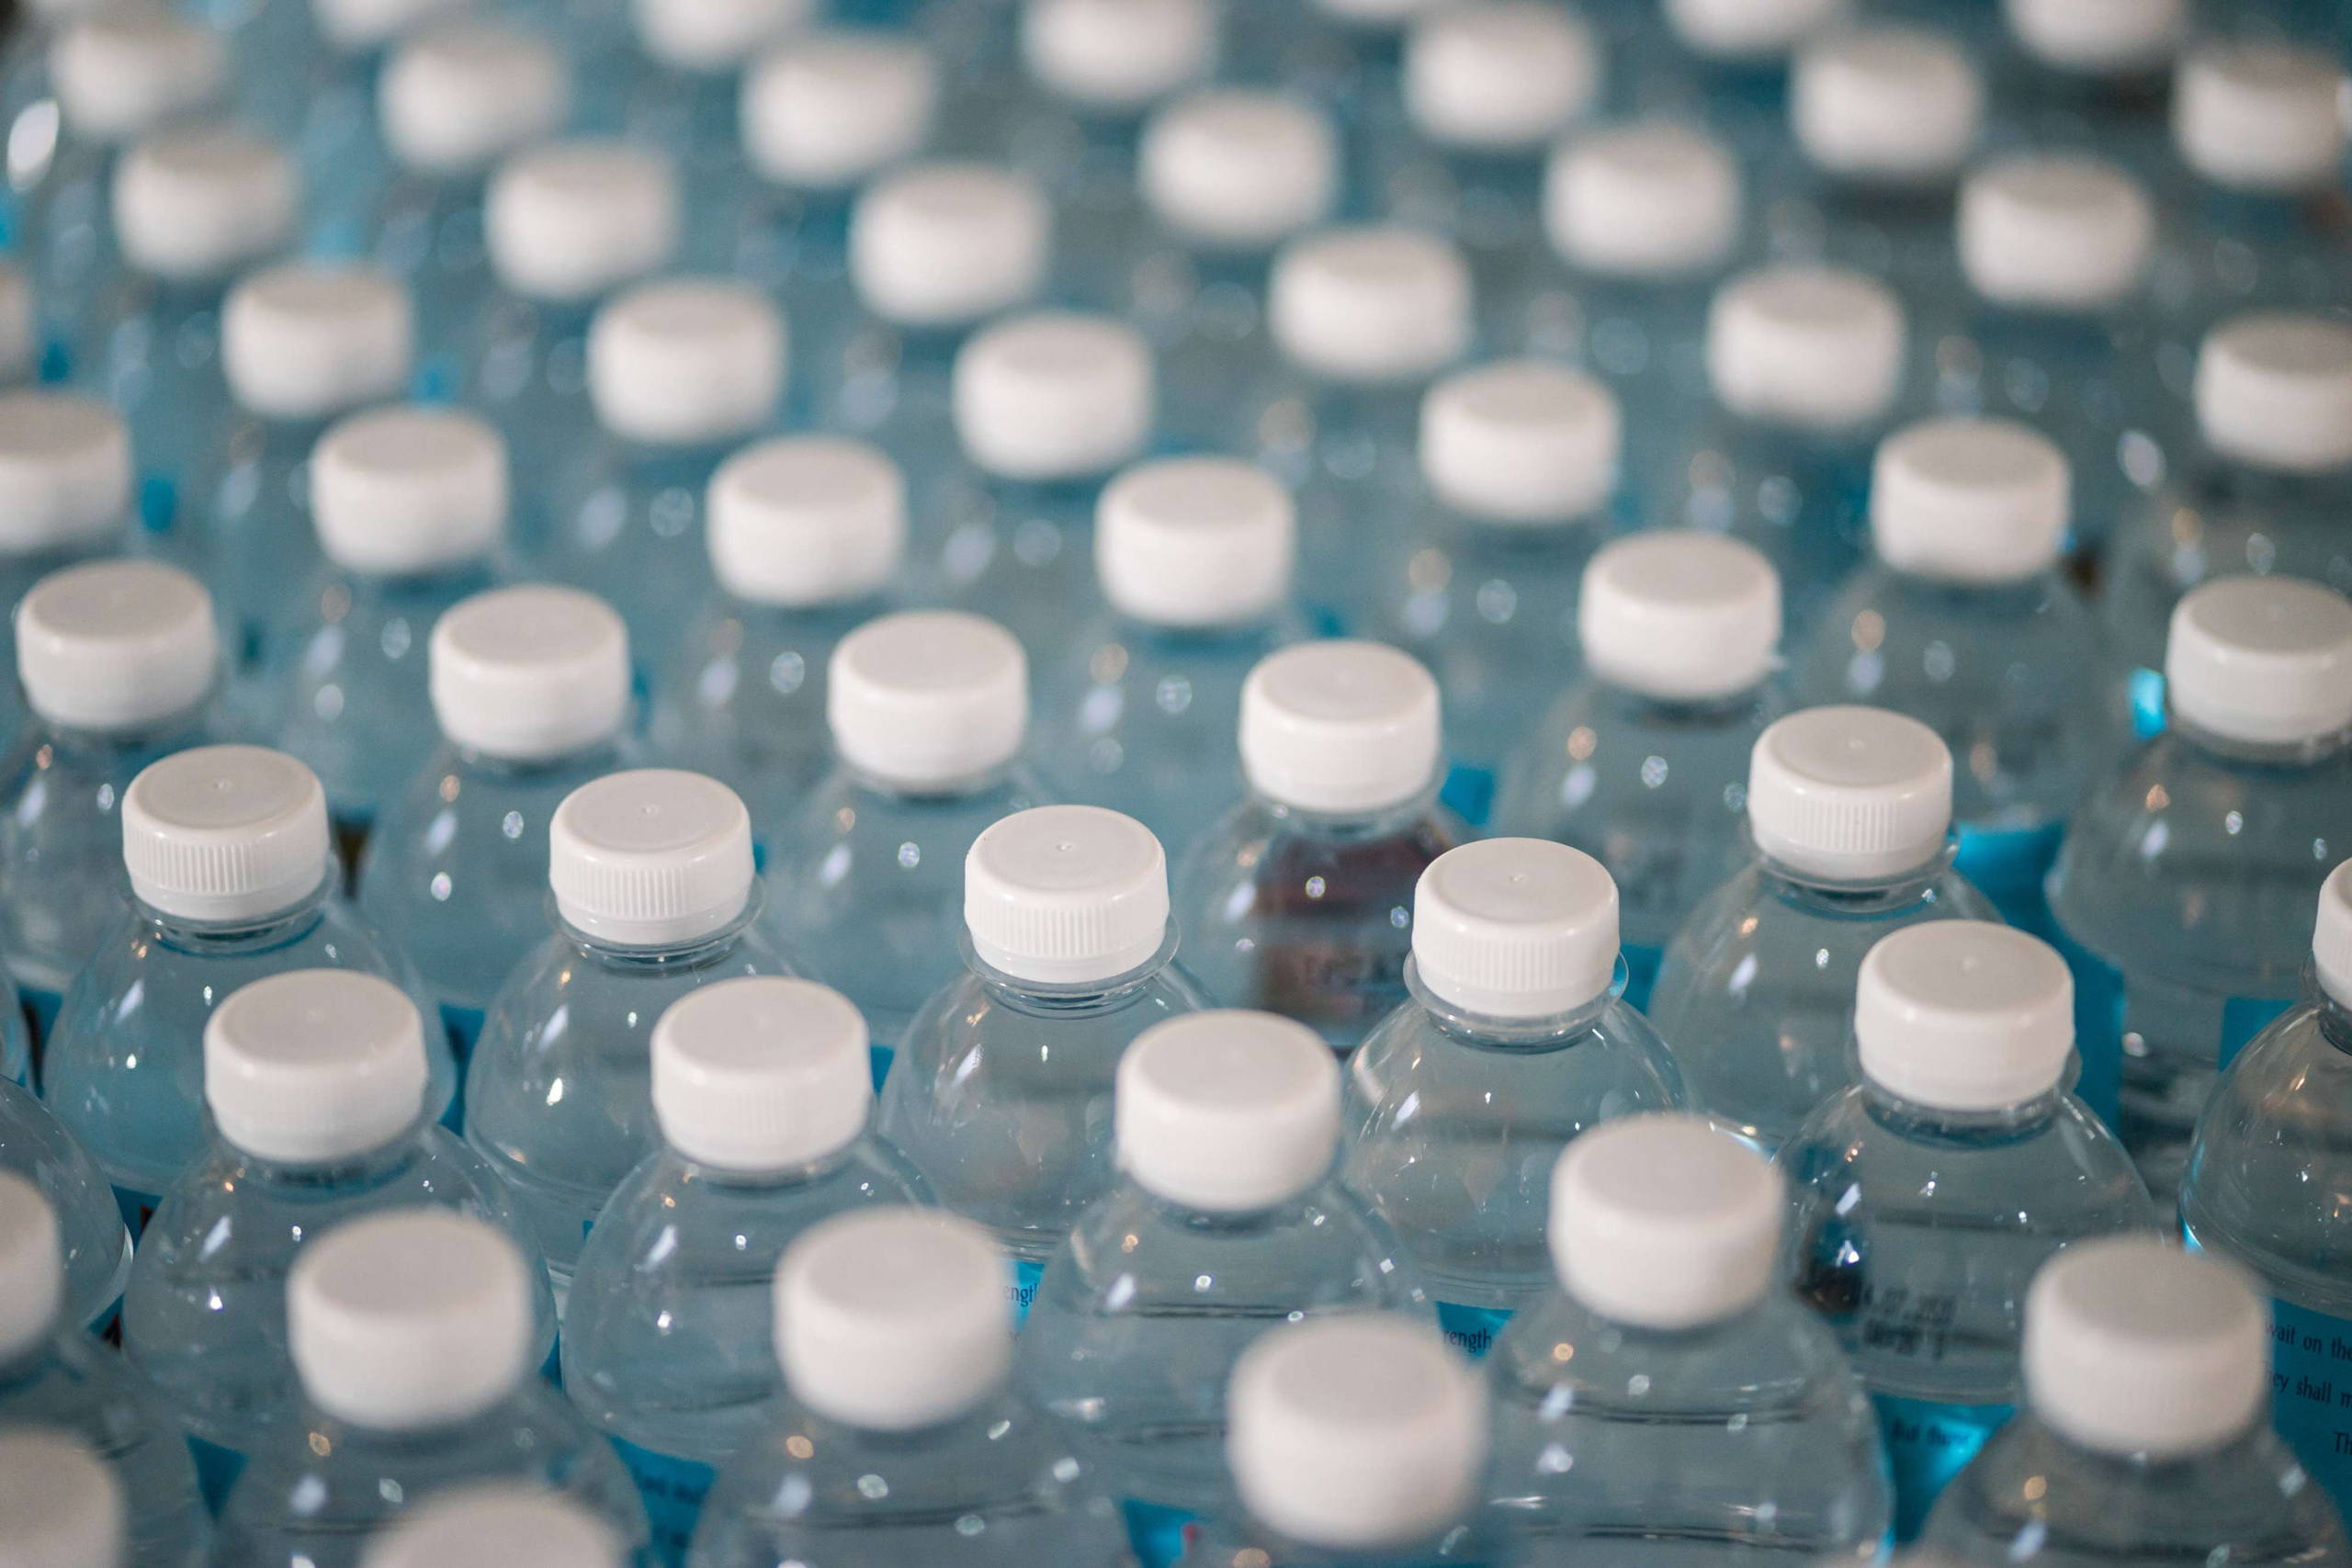 Cyclosas - Faire attention à sa consommation d'eau en bouteille - Ecologie 